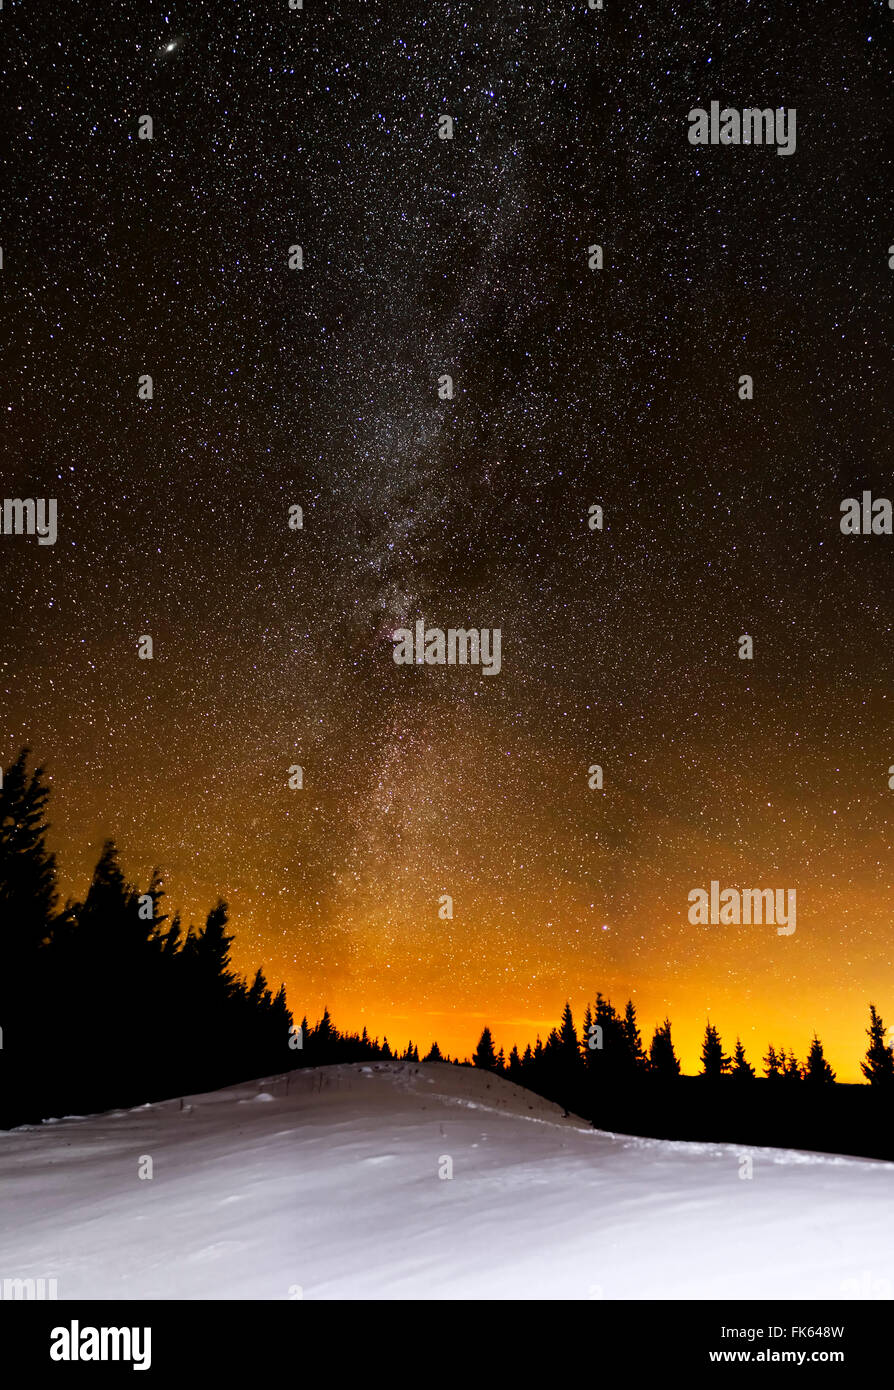 Incredibile star notte sulla collina nevoso e di abeti con la via lattea Foto Stock